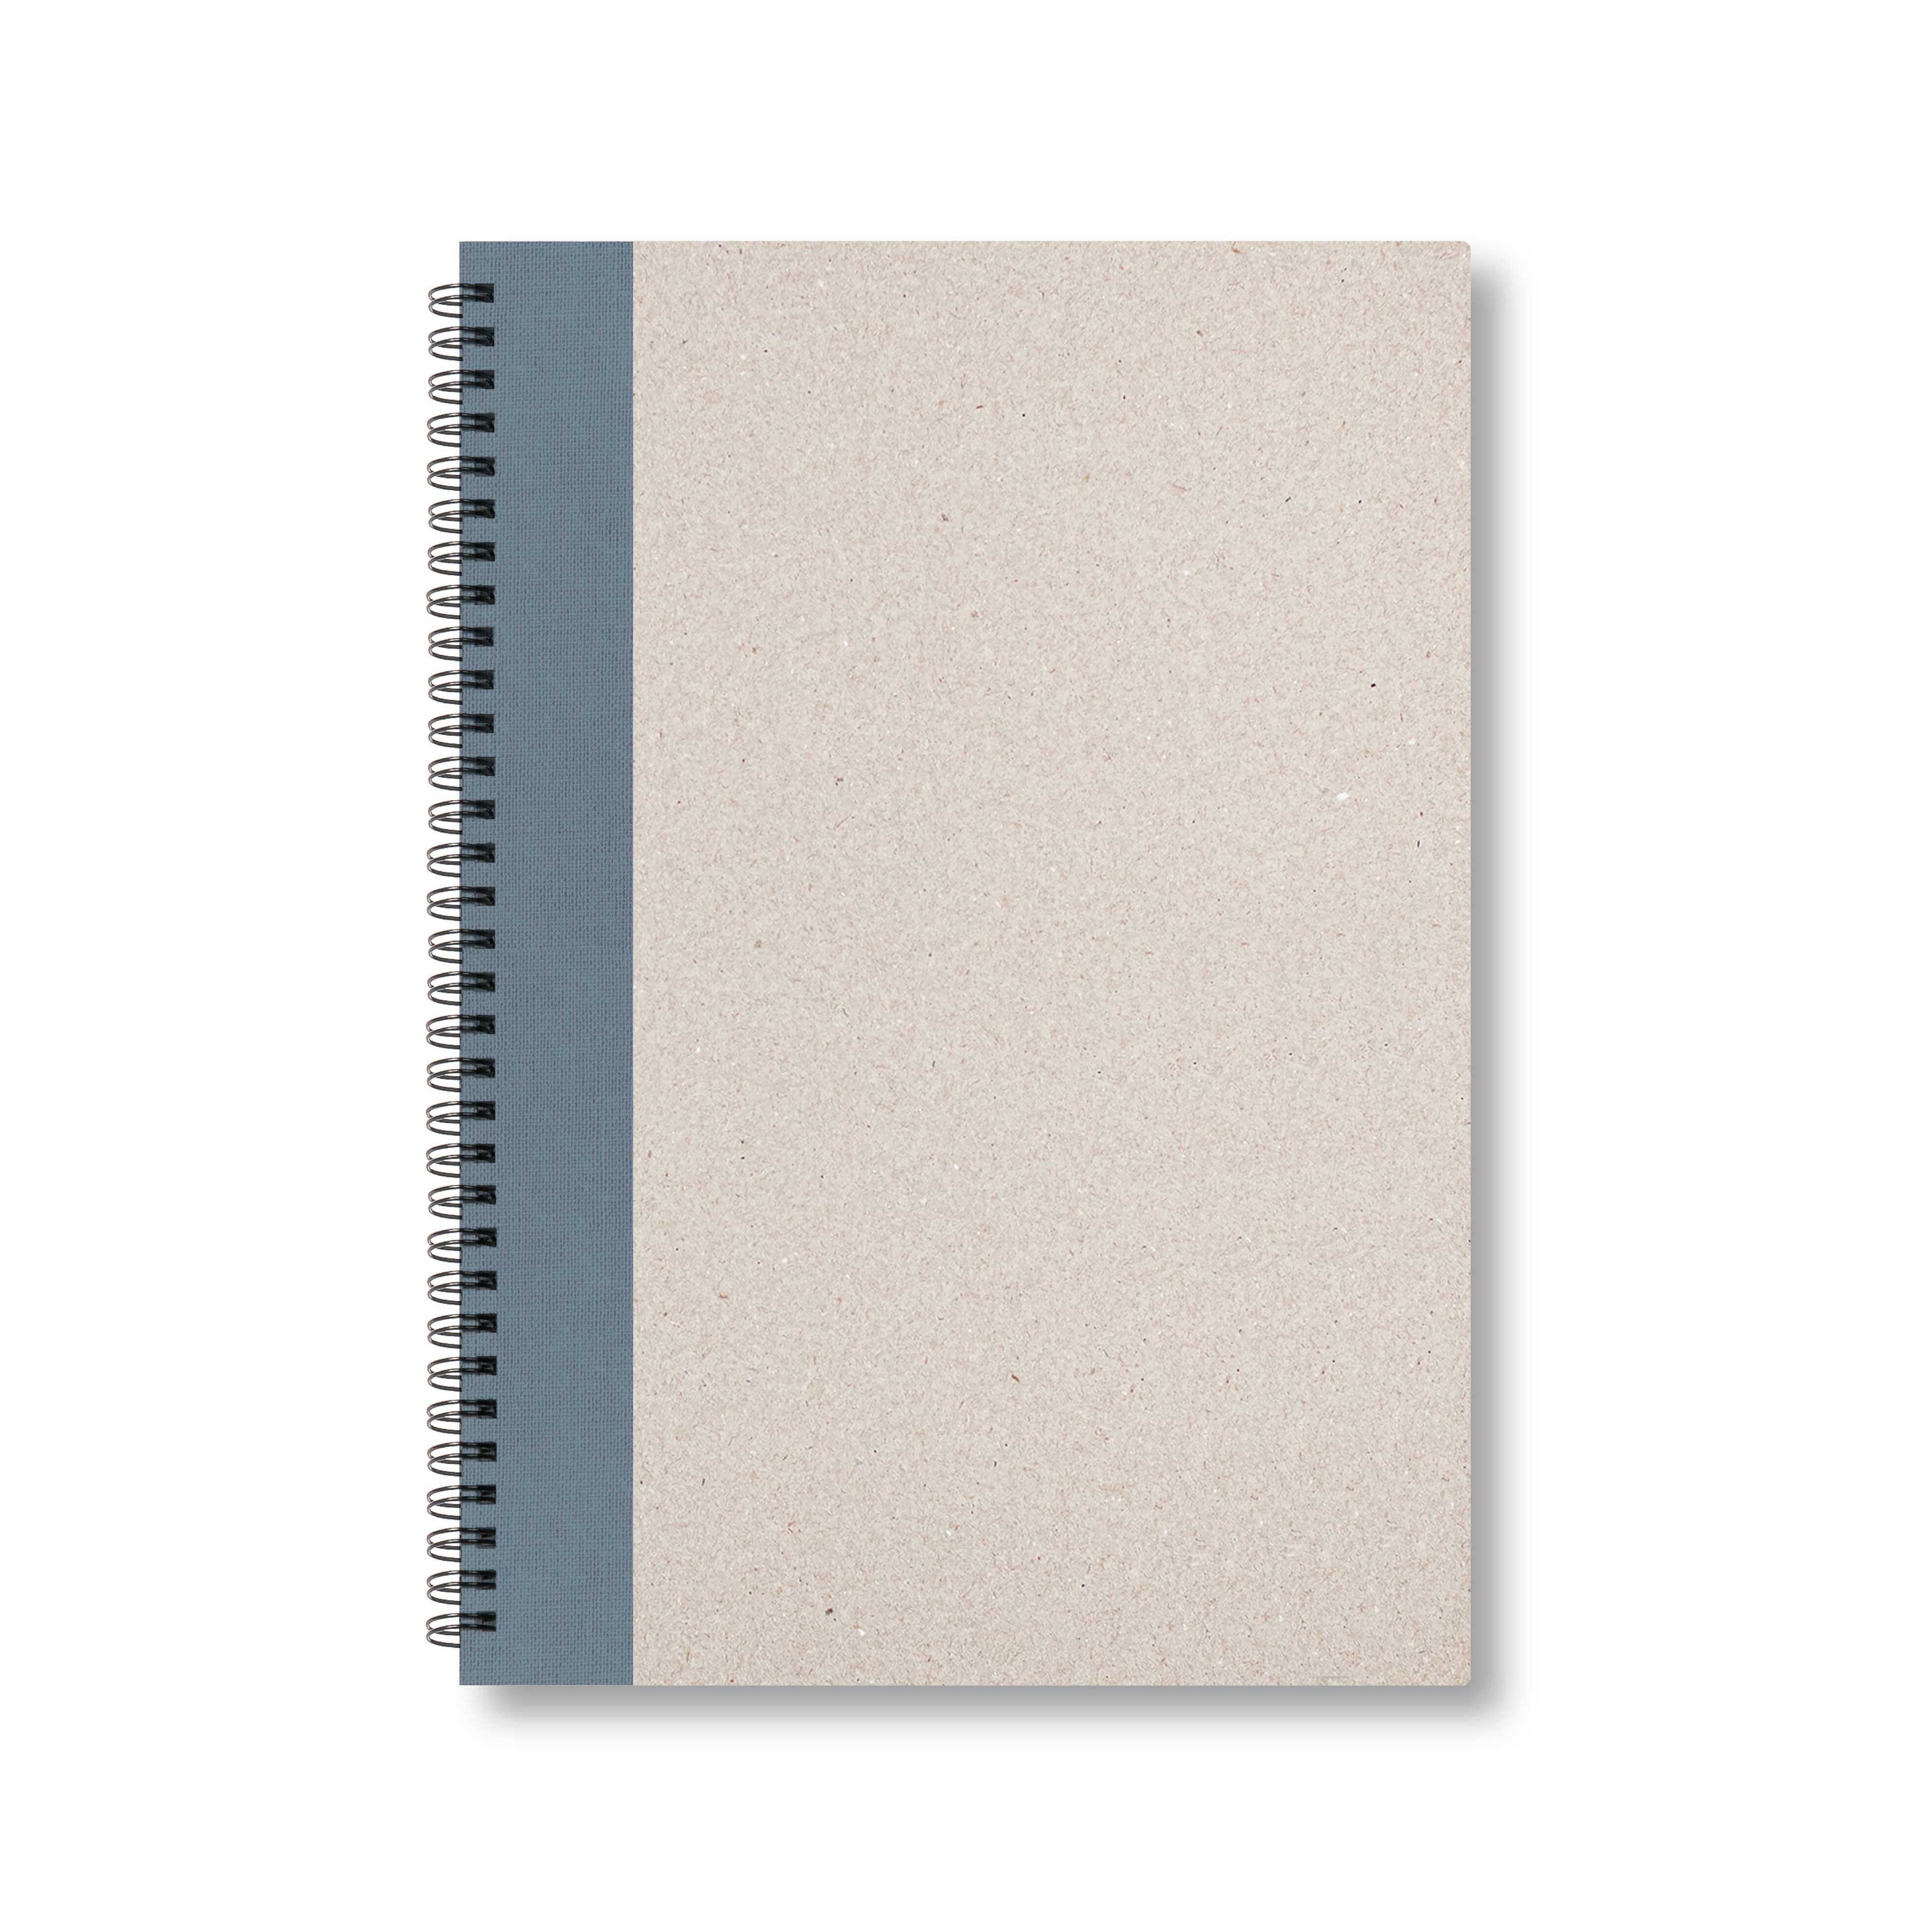 BOBO Zápisník, B5, čtverečkovaný, šedý, konfiguruj si obálku